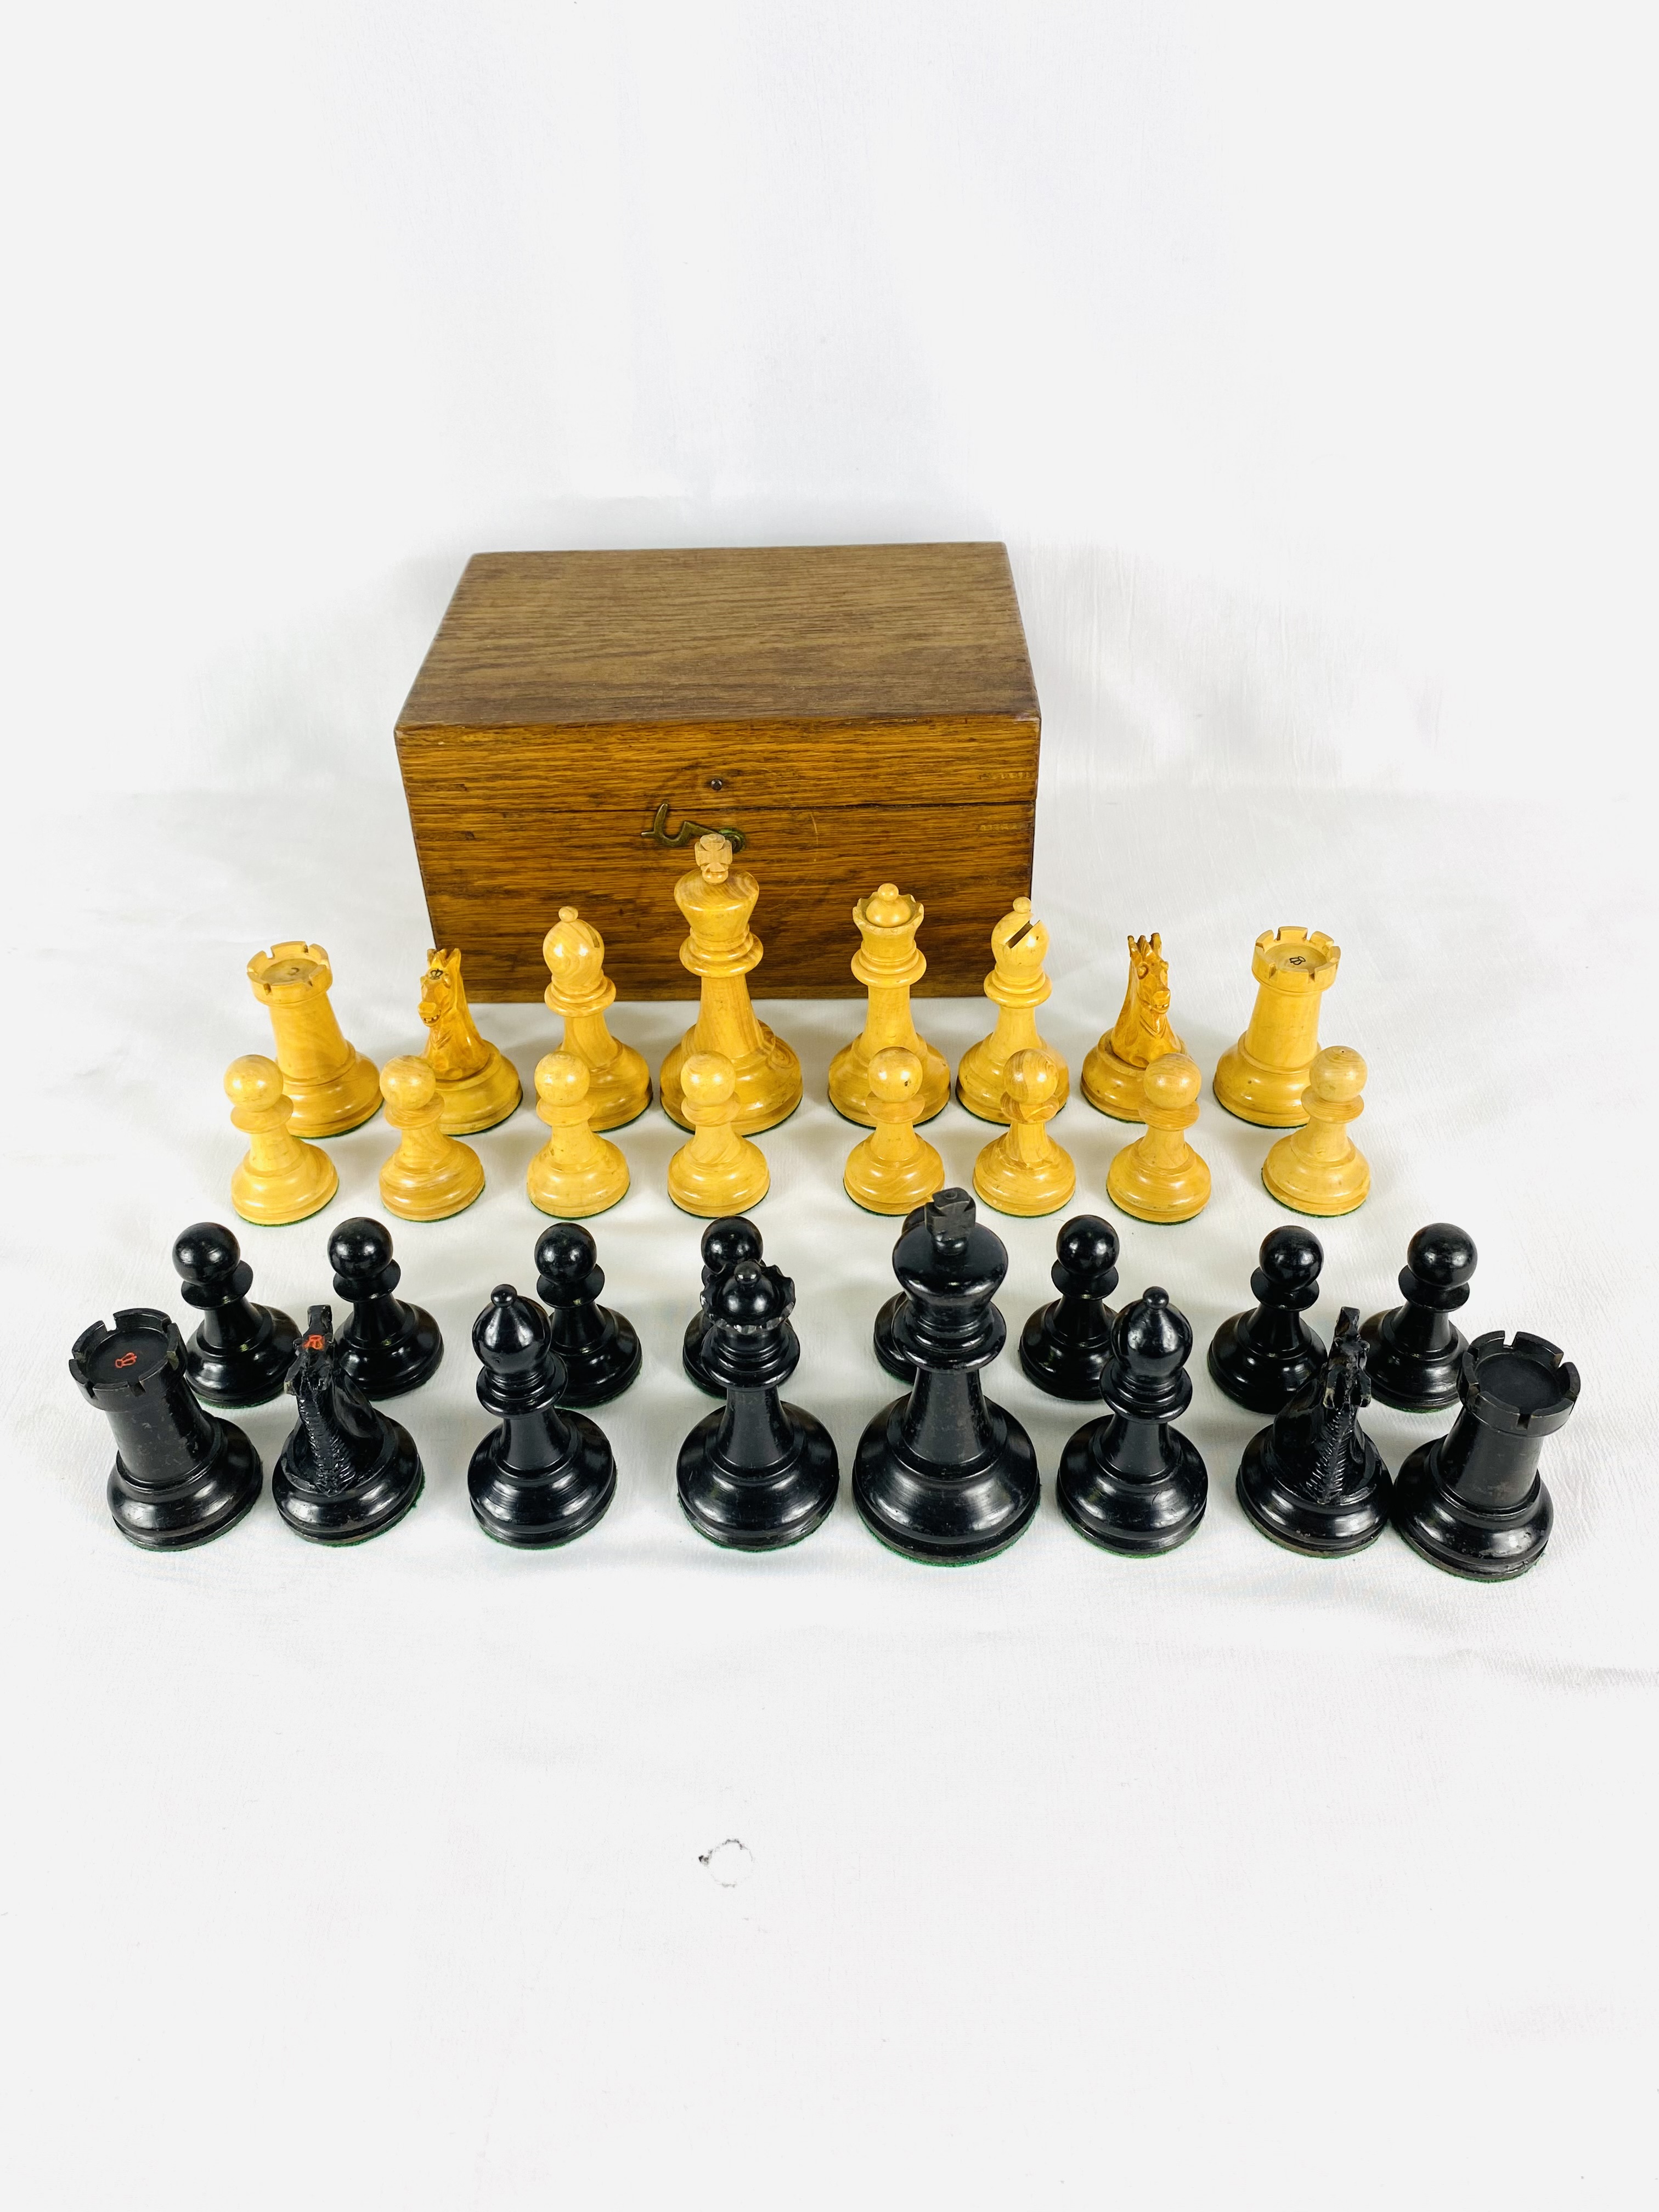 Boxwood and ebony Staunton style chess set - Image 6 of 6